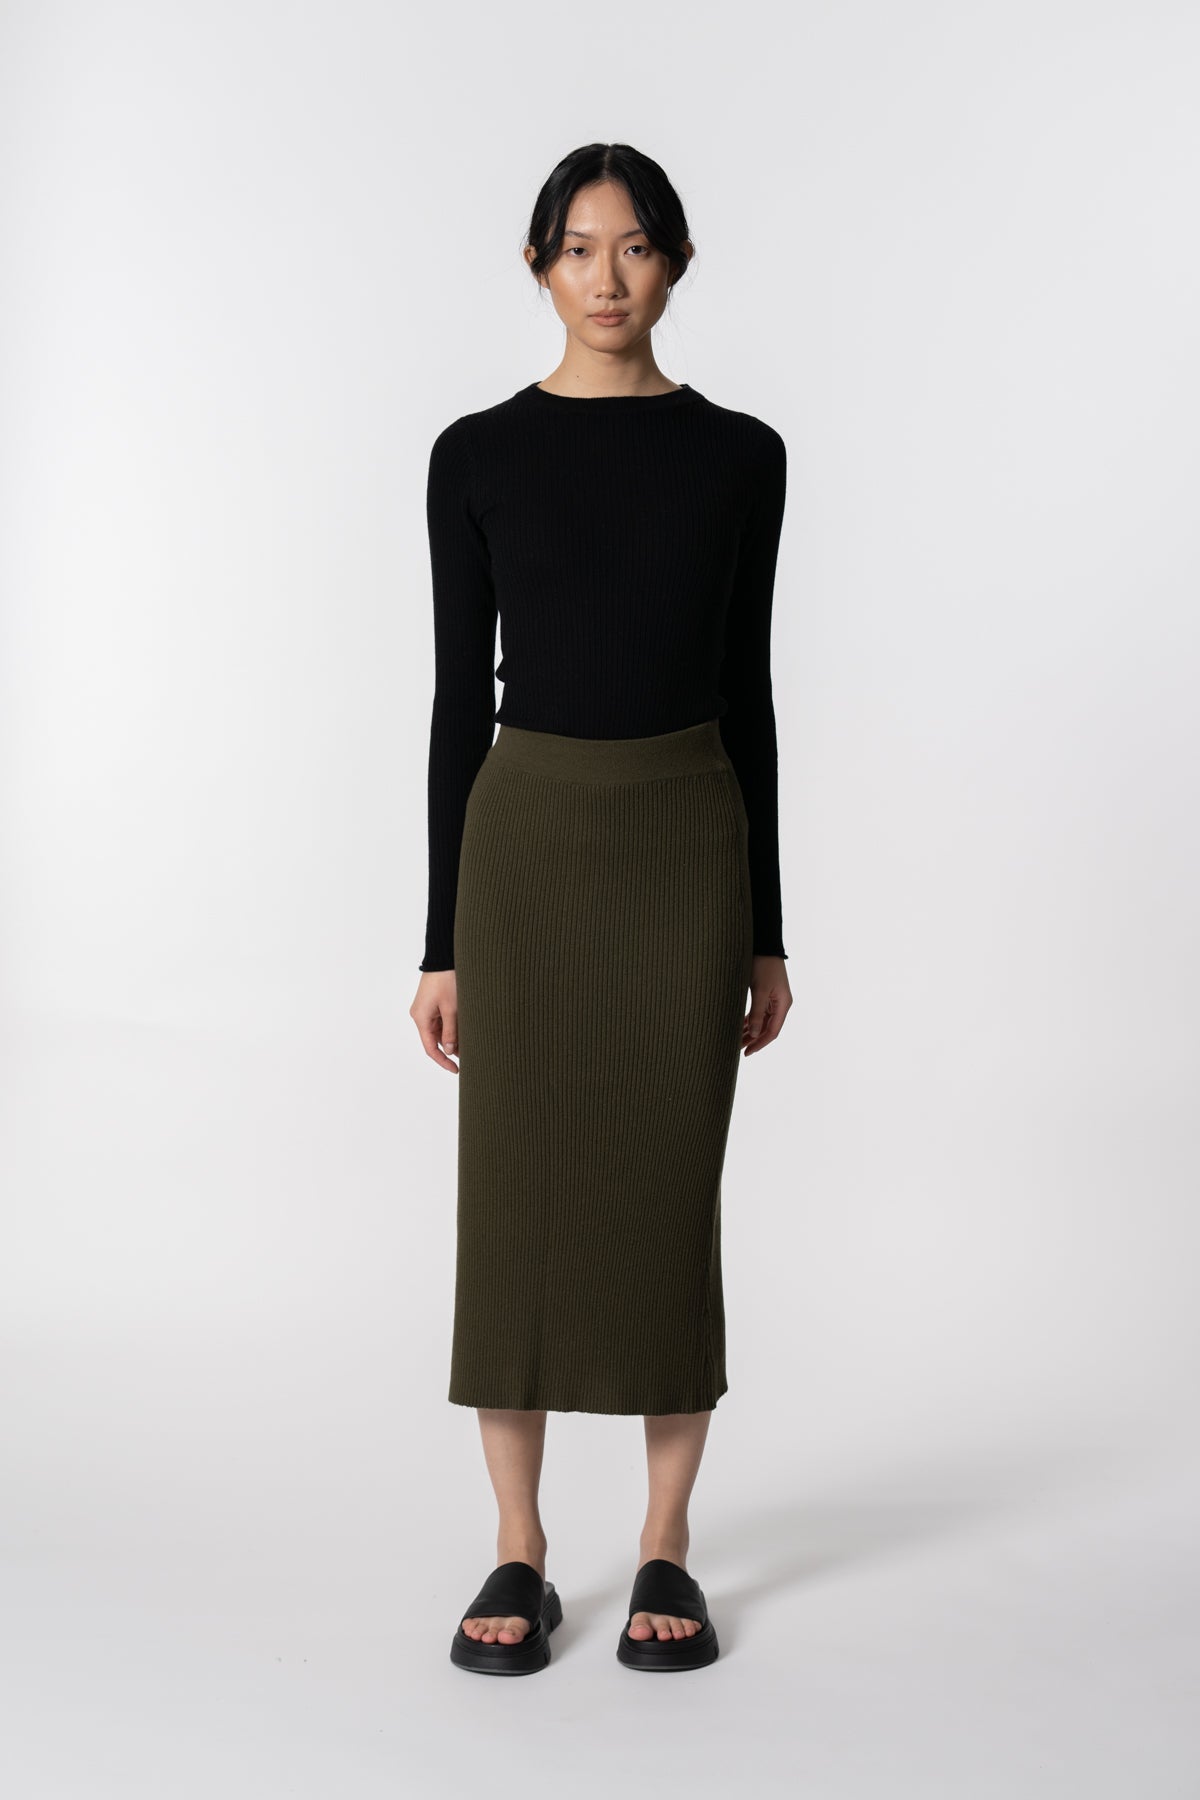 Merino Rib Skirt In Olive Green – Textile Apparel